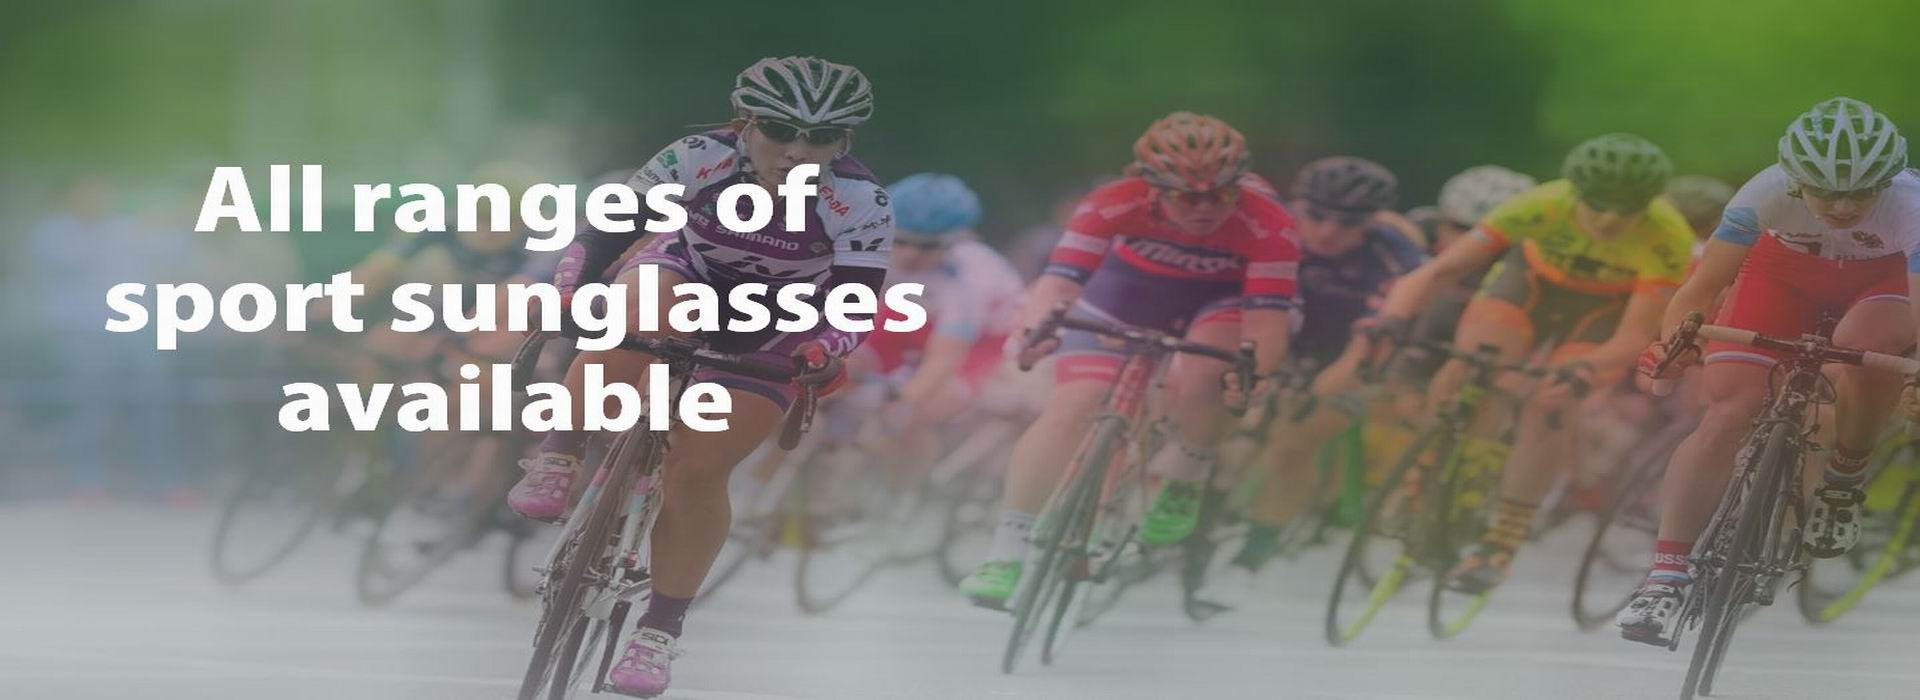 Солнцезащитные очки для велоспорта